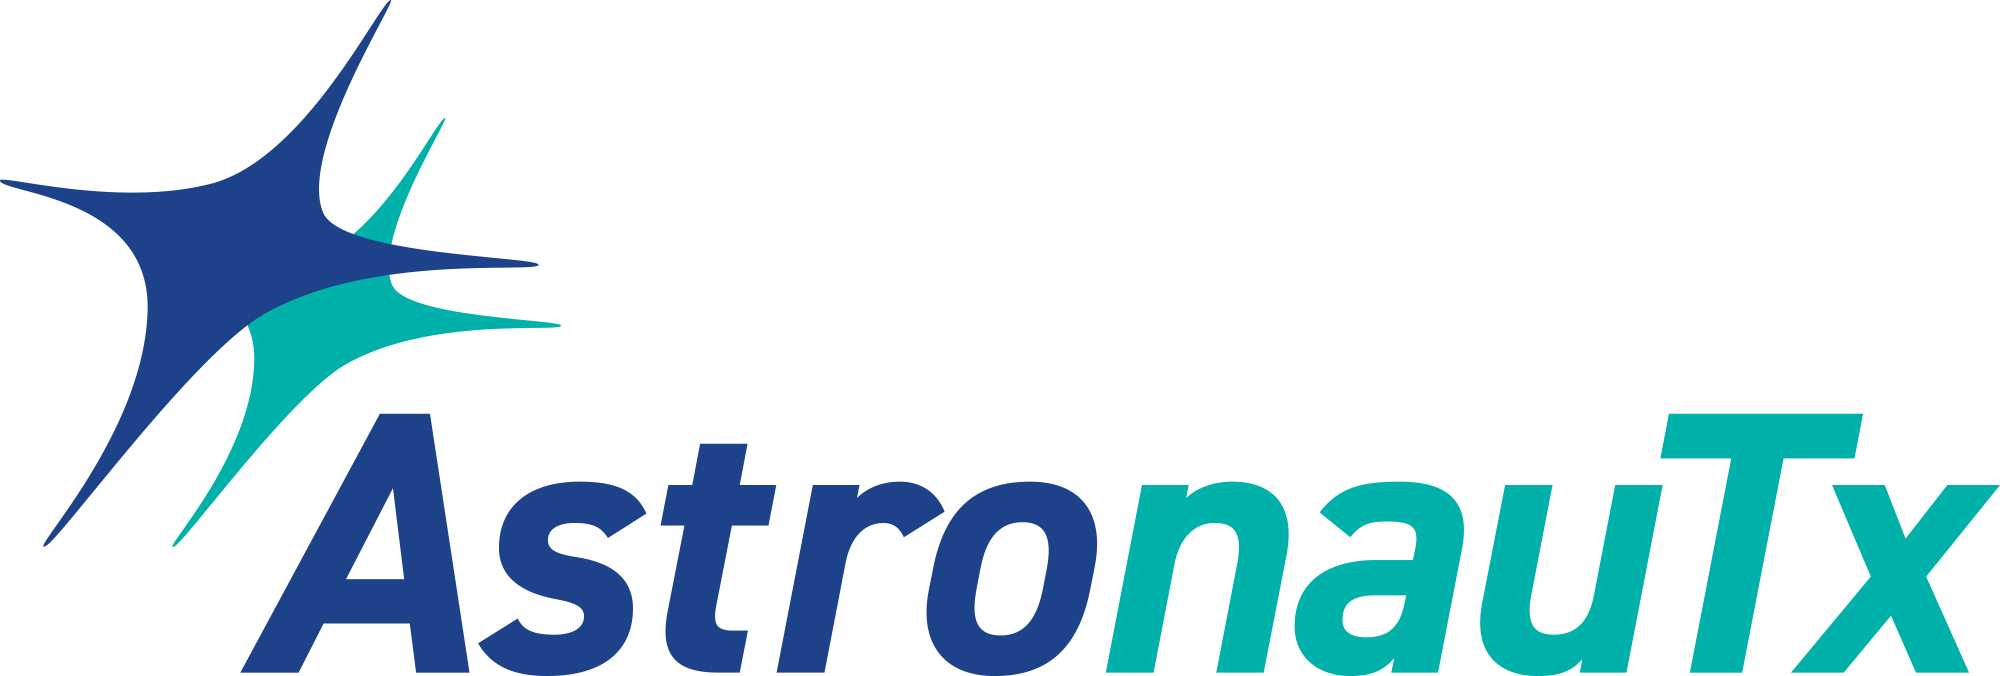 AstronauTx Logo